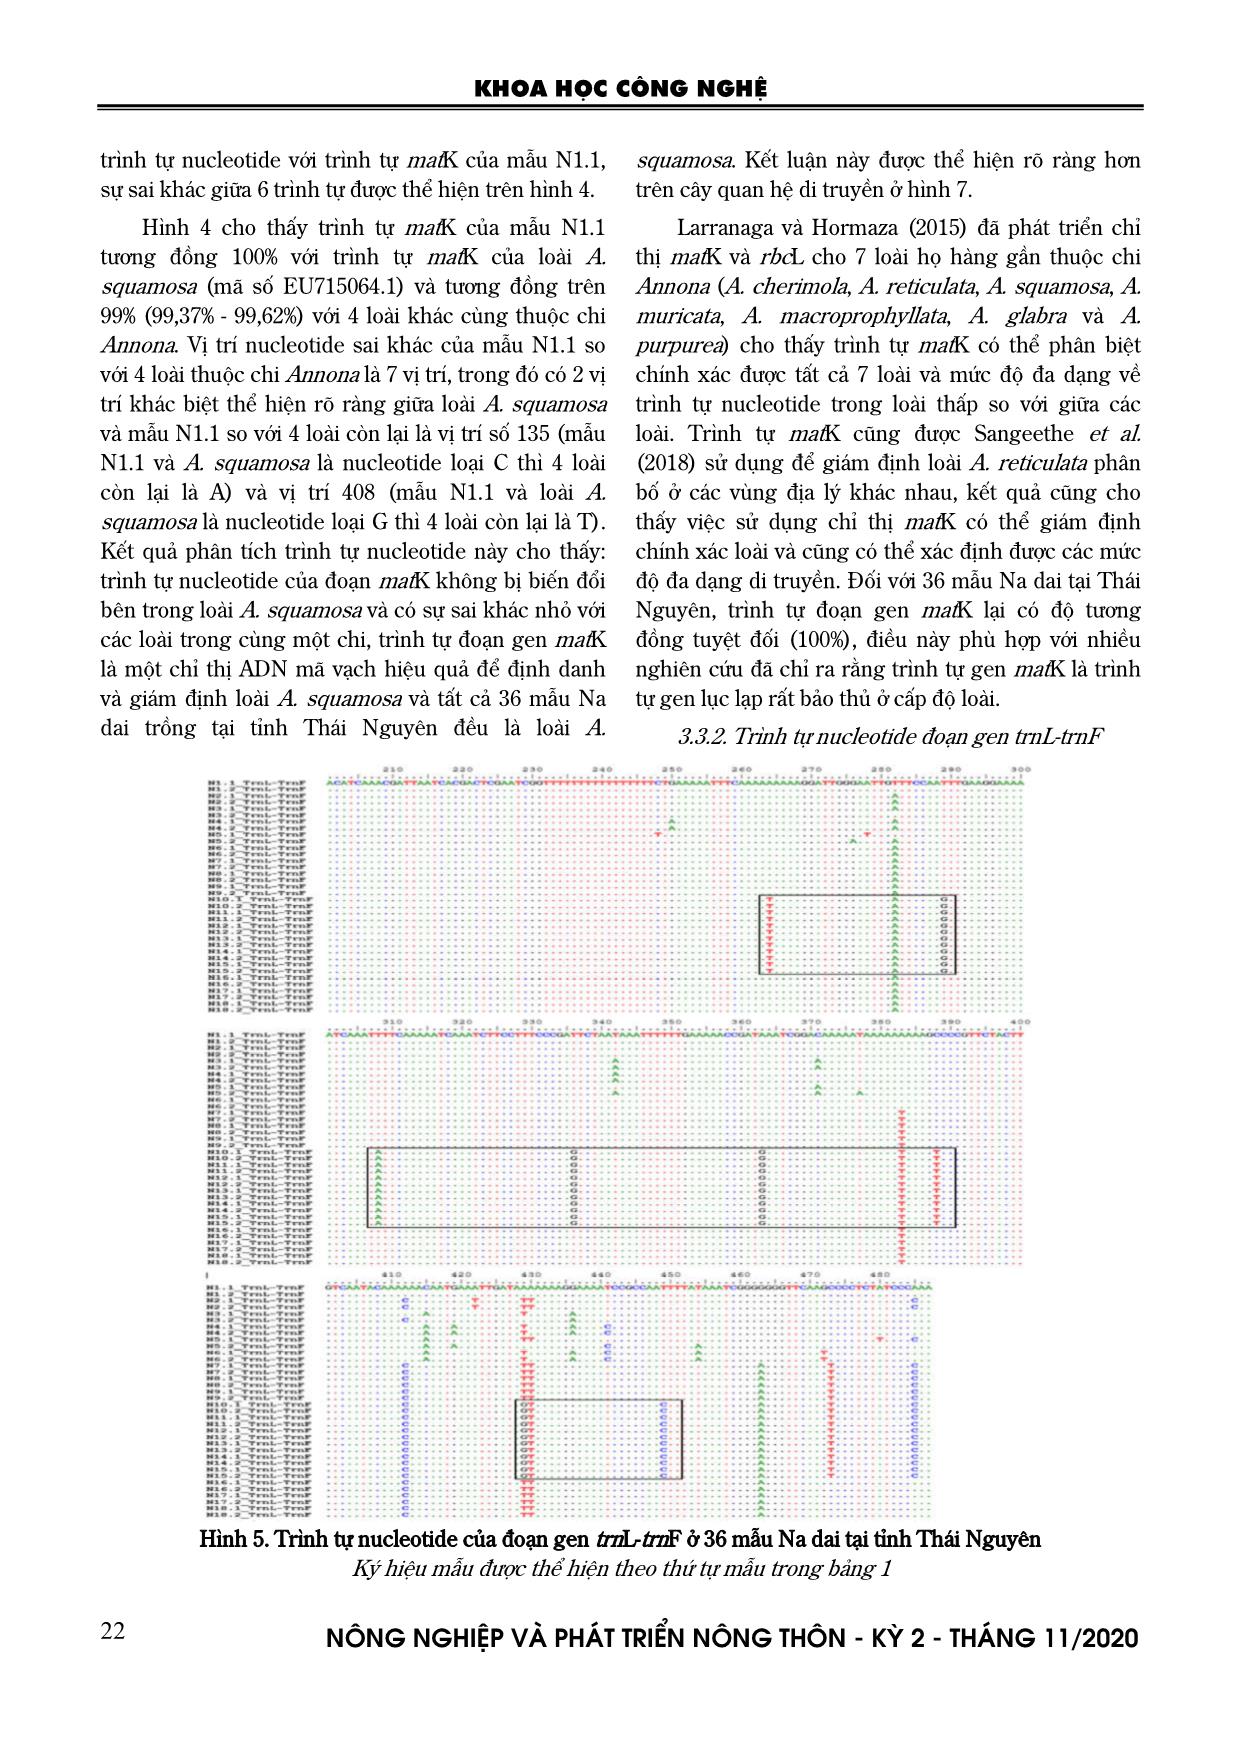 Nghiên cứu xác định một số trình tự ADN mã vạch phục vụ công tác phân loại và nhận dạng các giống na dai (Annona squamosa) tại Thái Nguyên trang 6